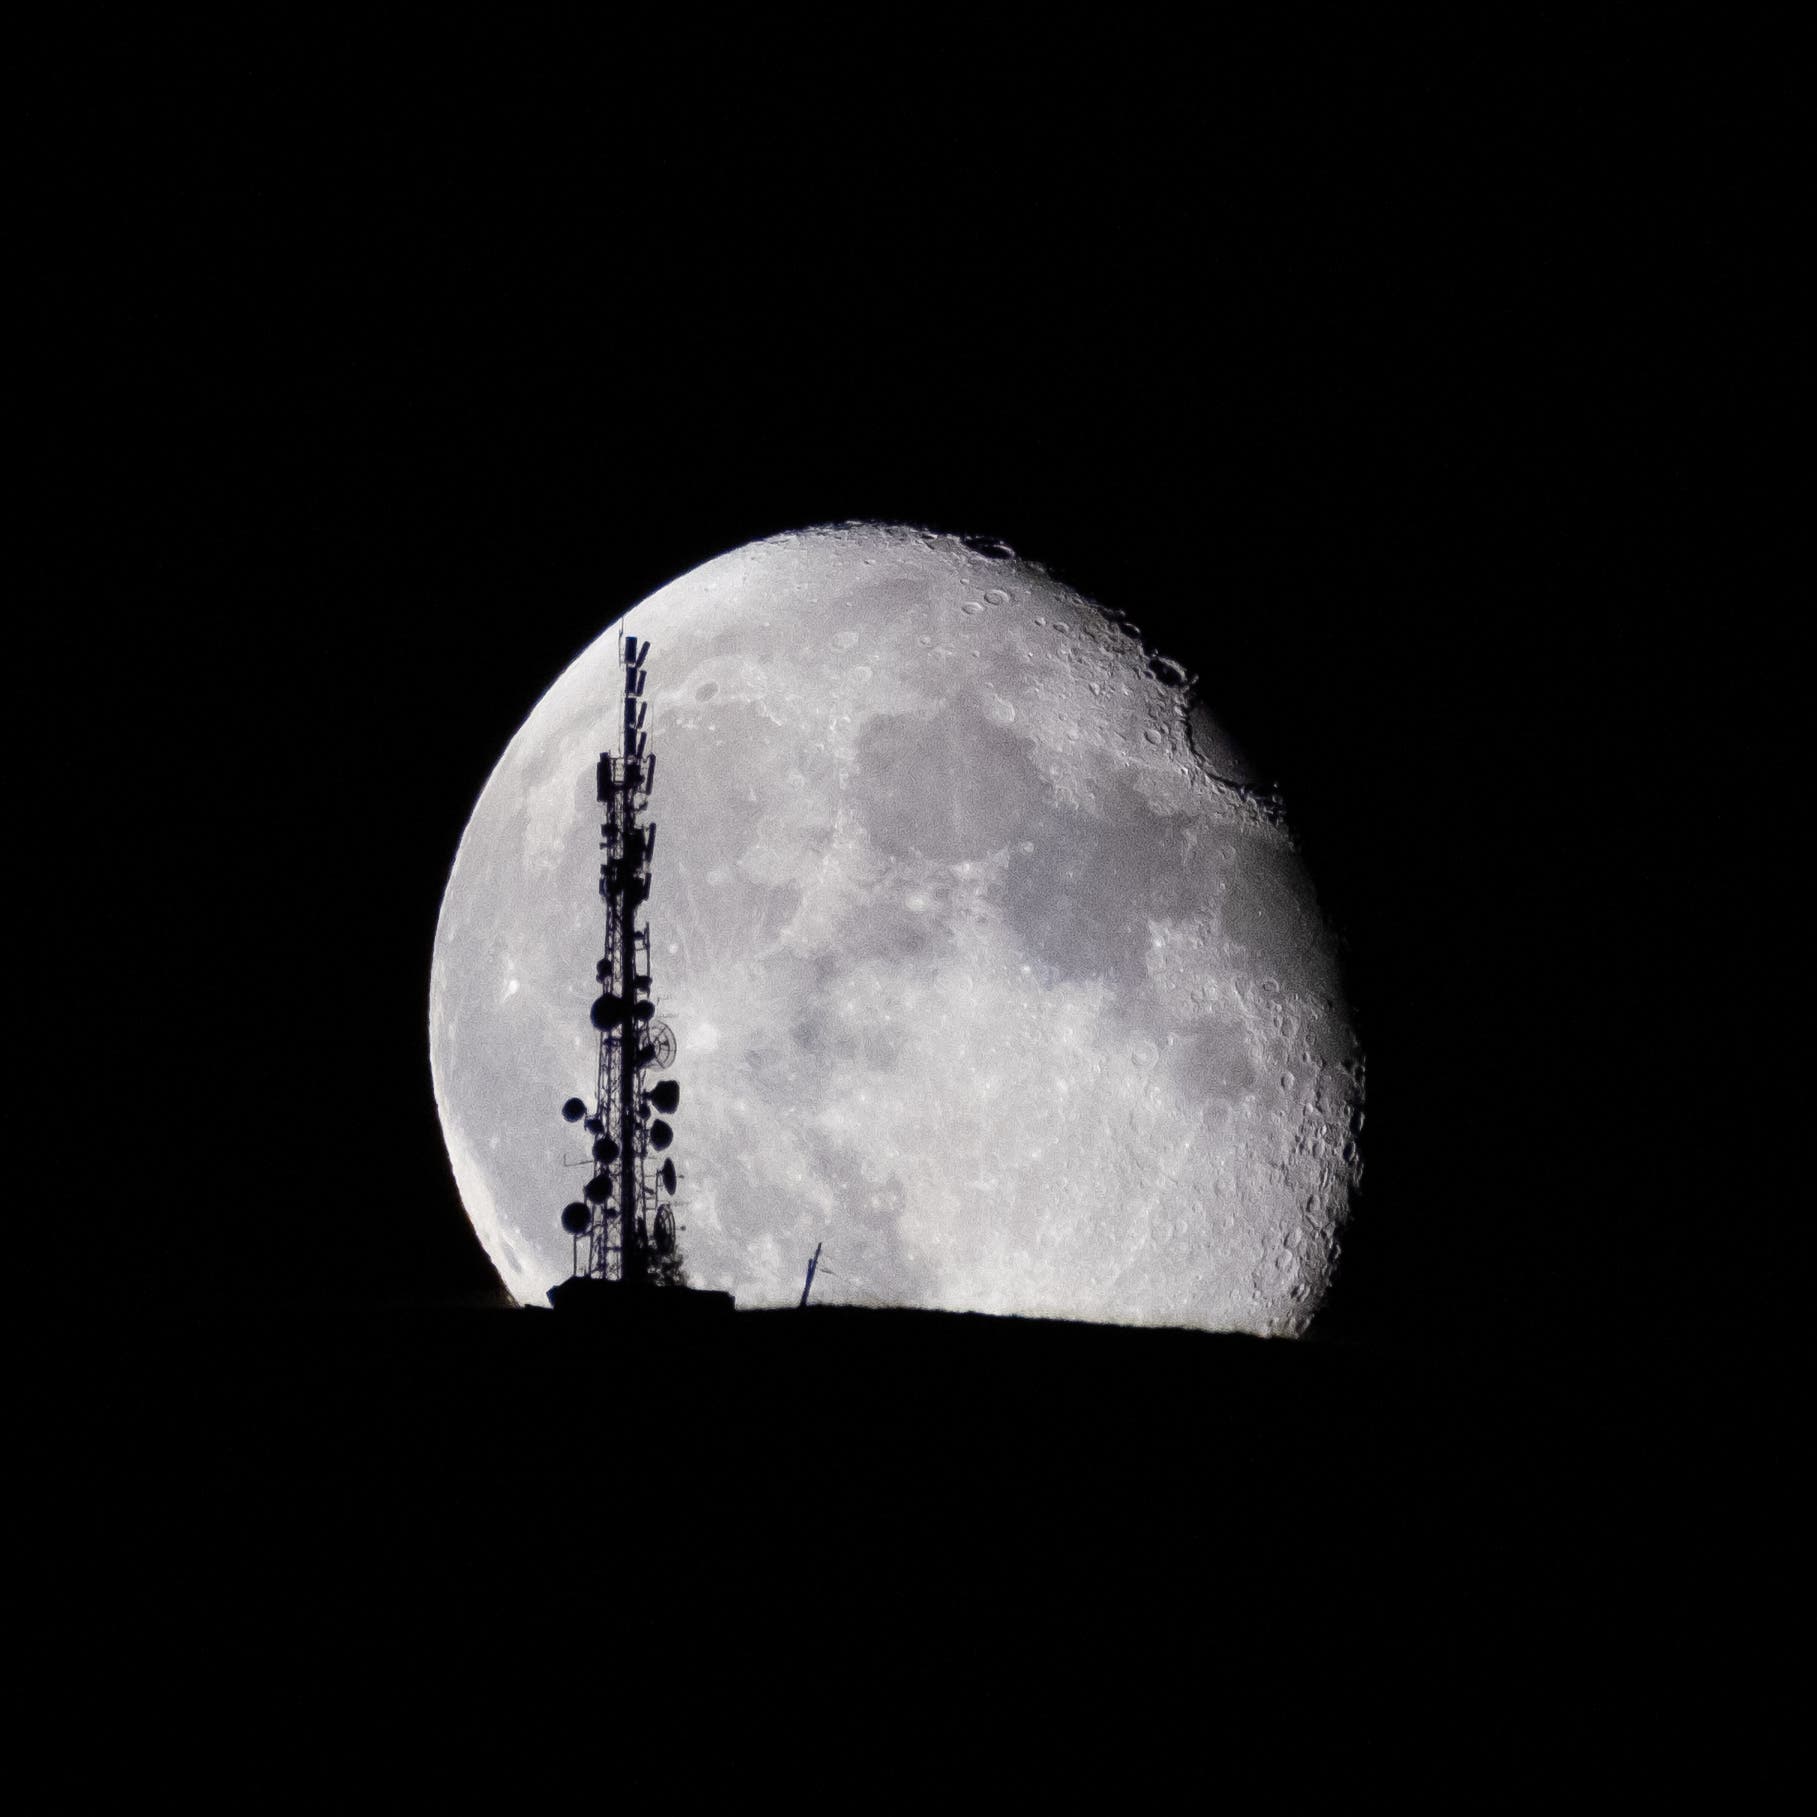 Aufgehender Mond vor Funkturm